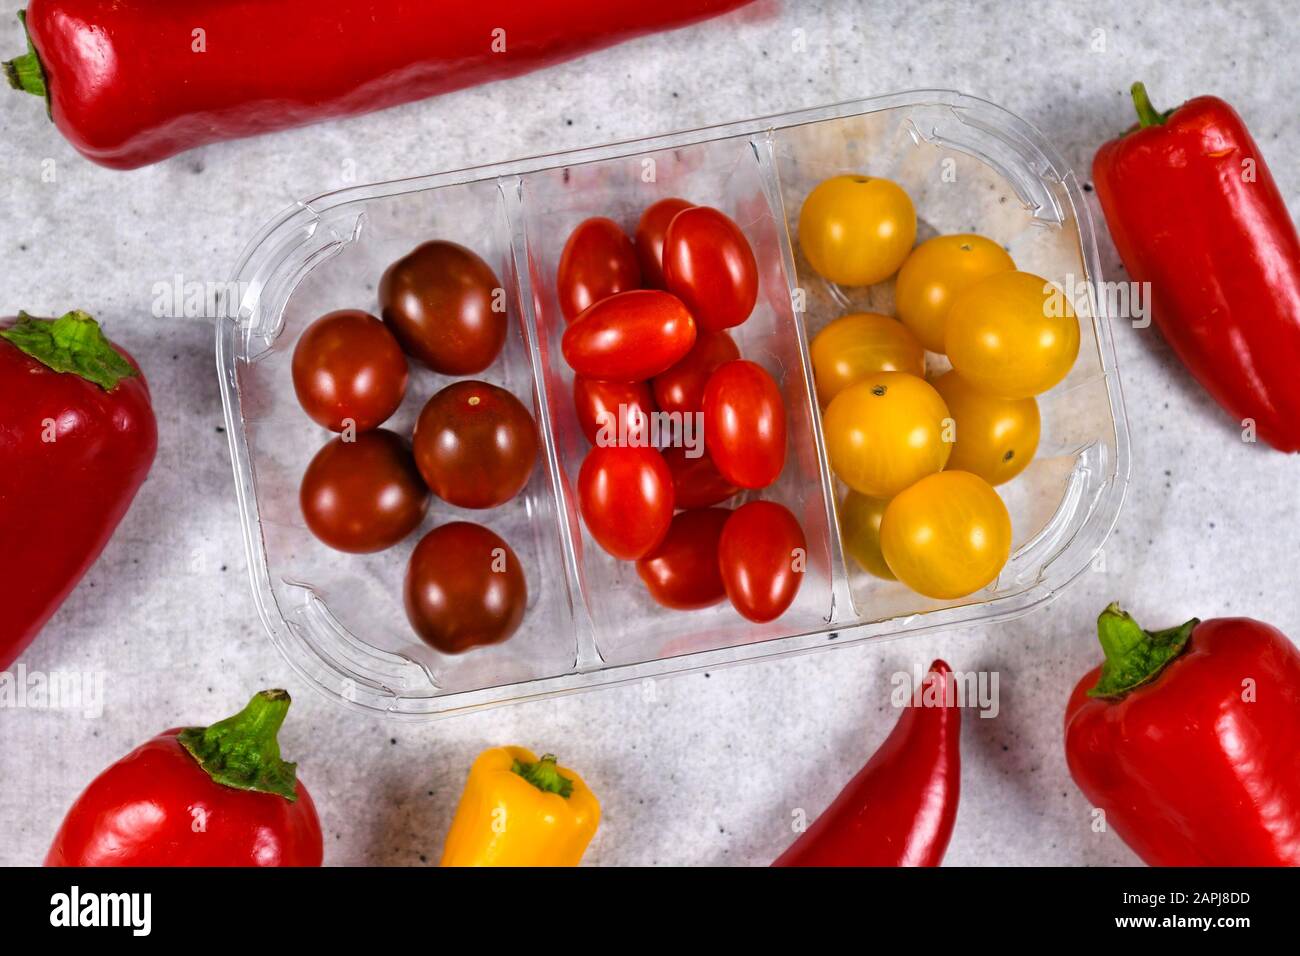 Mélanger différents types de petits légumes rouges, rouges foncé et jaunes de tomates cerises dans un récipient en plastique Banque D'Images